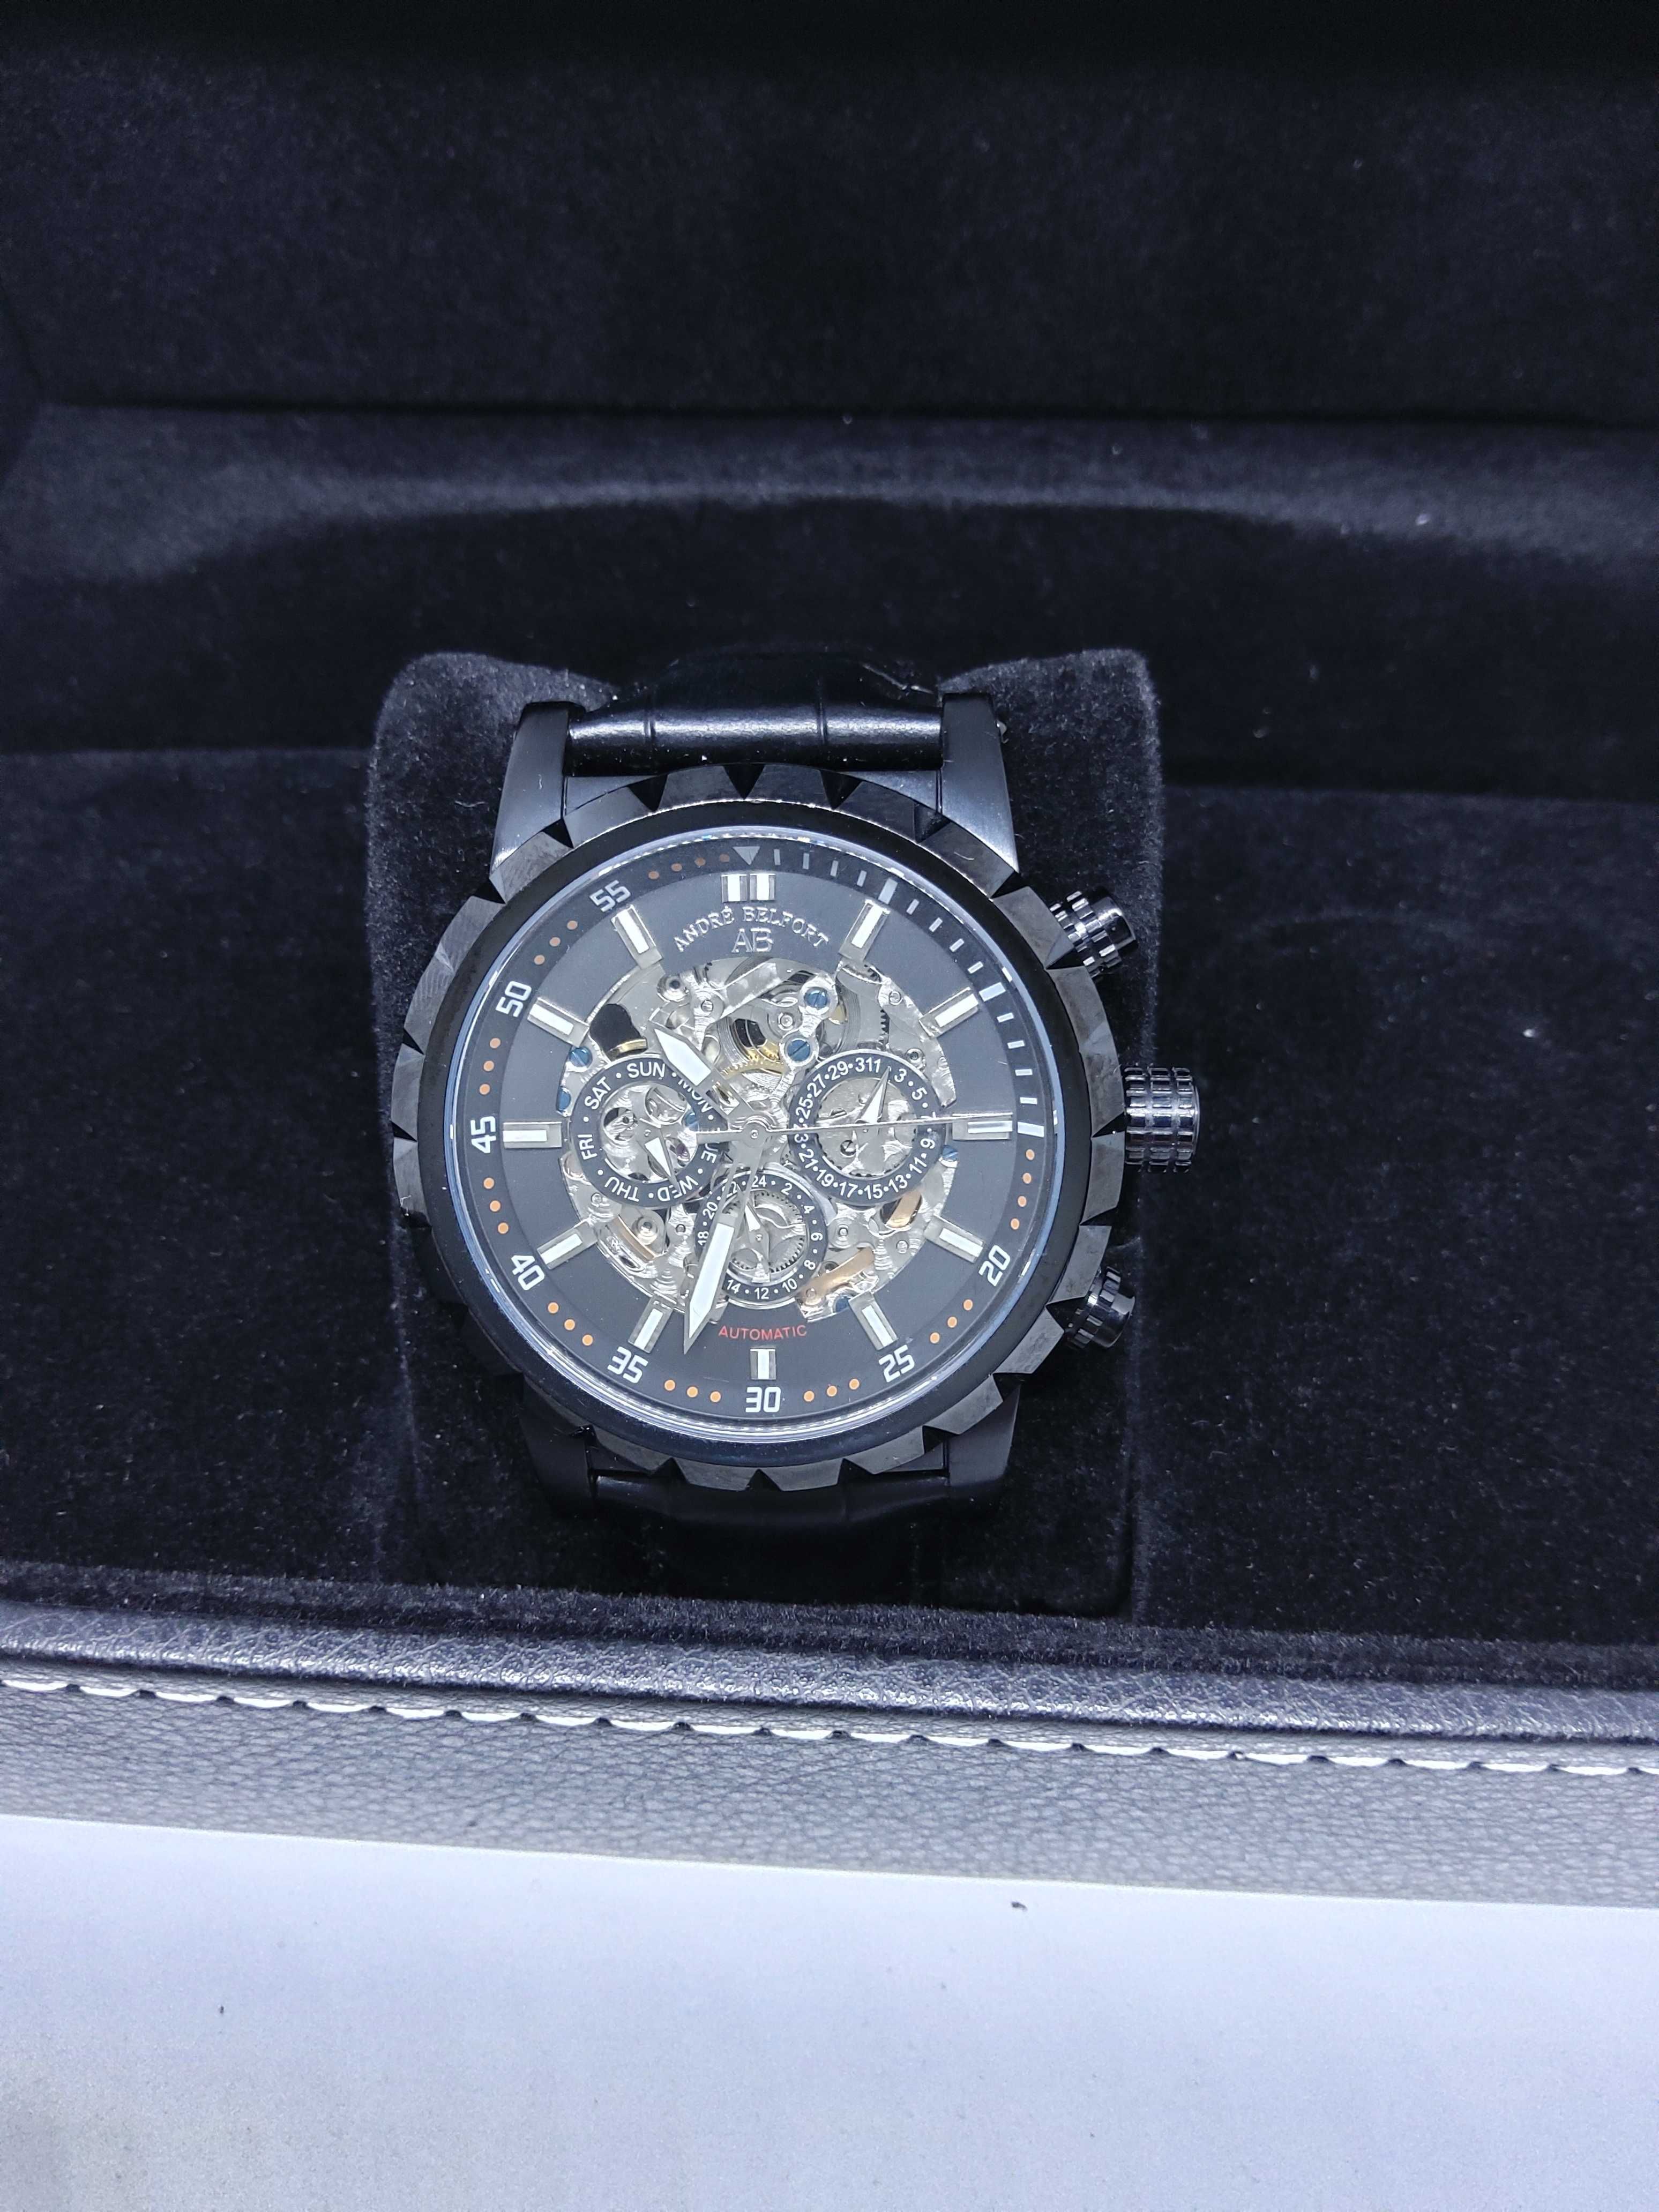 Zegarek męski automatyczny Andre Belfort Conquête AB-7610 czarny